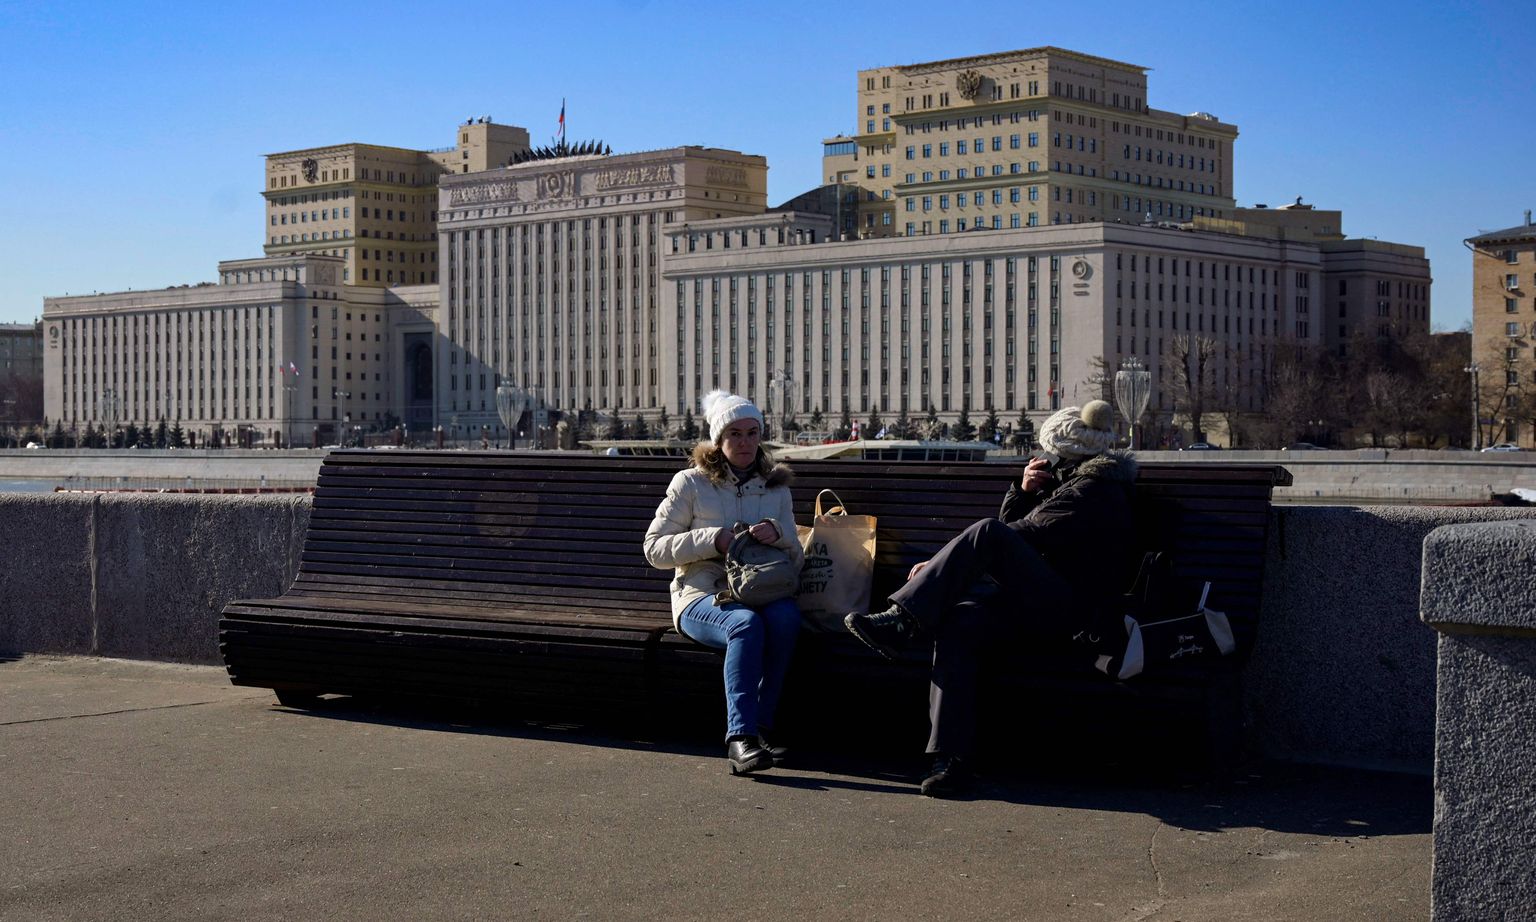 Venemaa kaitseministeeriumi hoone Moskvas. Foto on tehtud 1. märtsil 2022. Vene väed tungisid 24. veebruaril Ukrainasse, et see riik vallutada välksõjaga. Sõda on kestnud nüüd ühe kuu